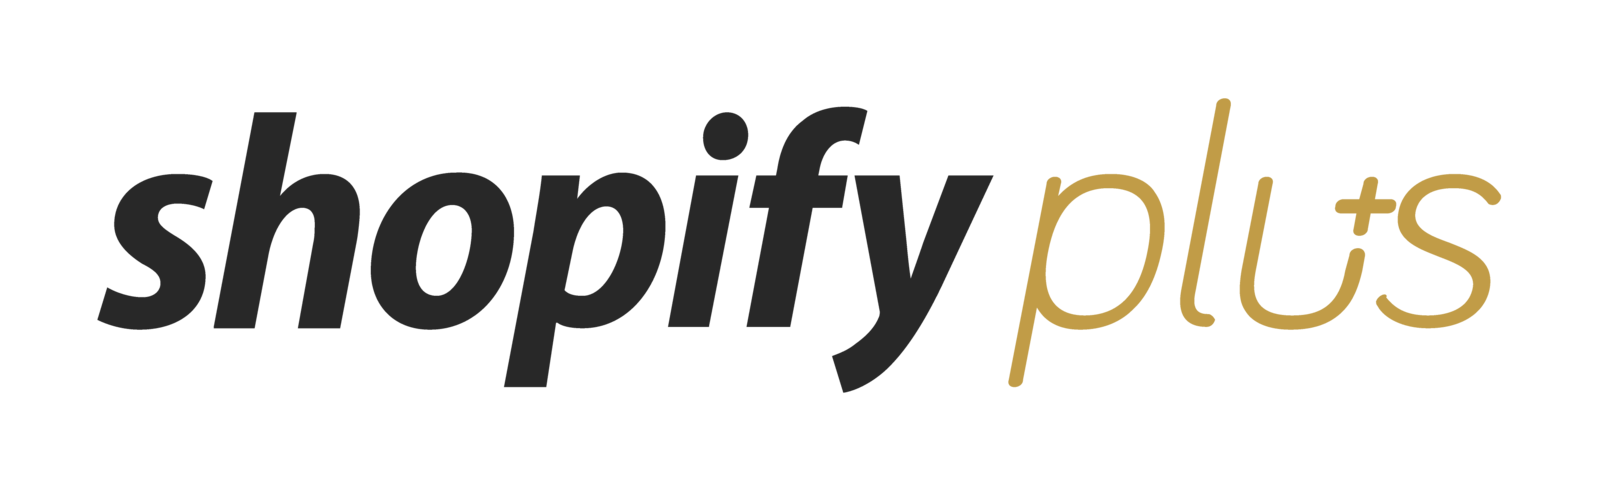 Ggole Plus Review Logo - Shopify Plus Review 2019. Reviews, Ratings, Complaints